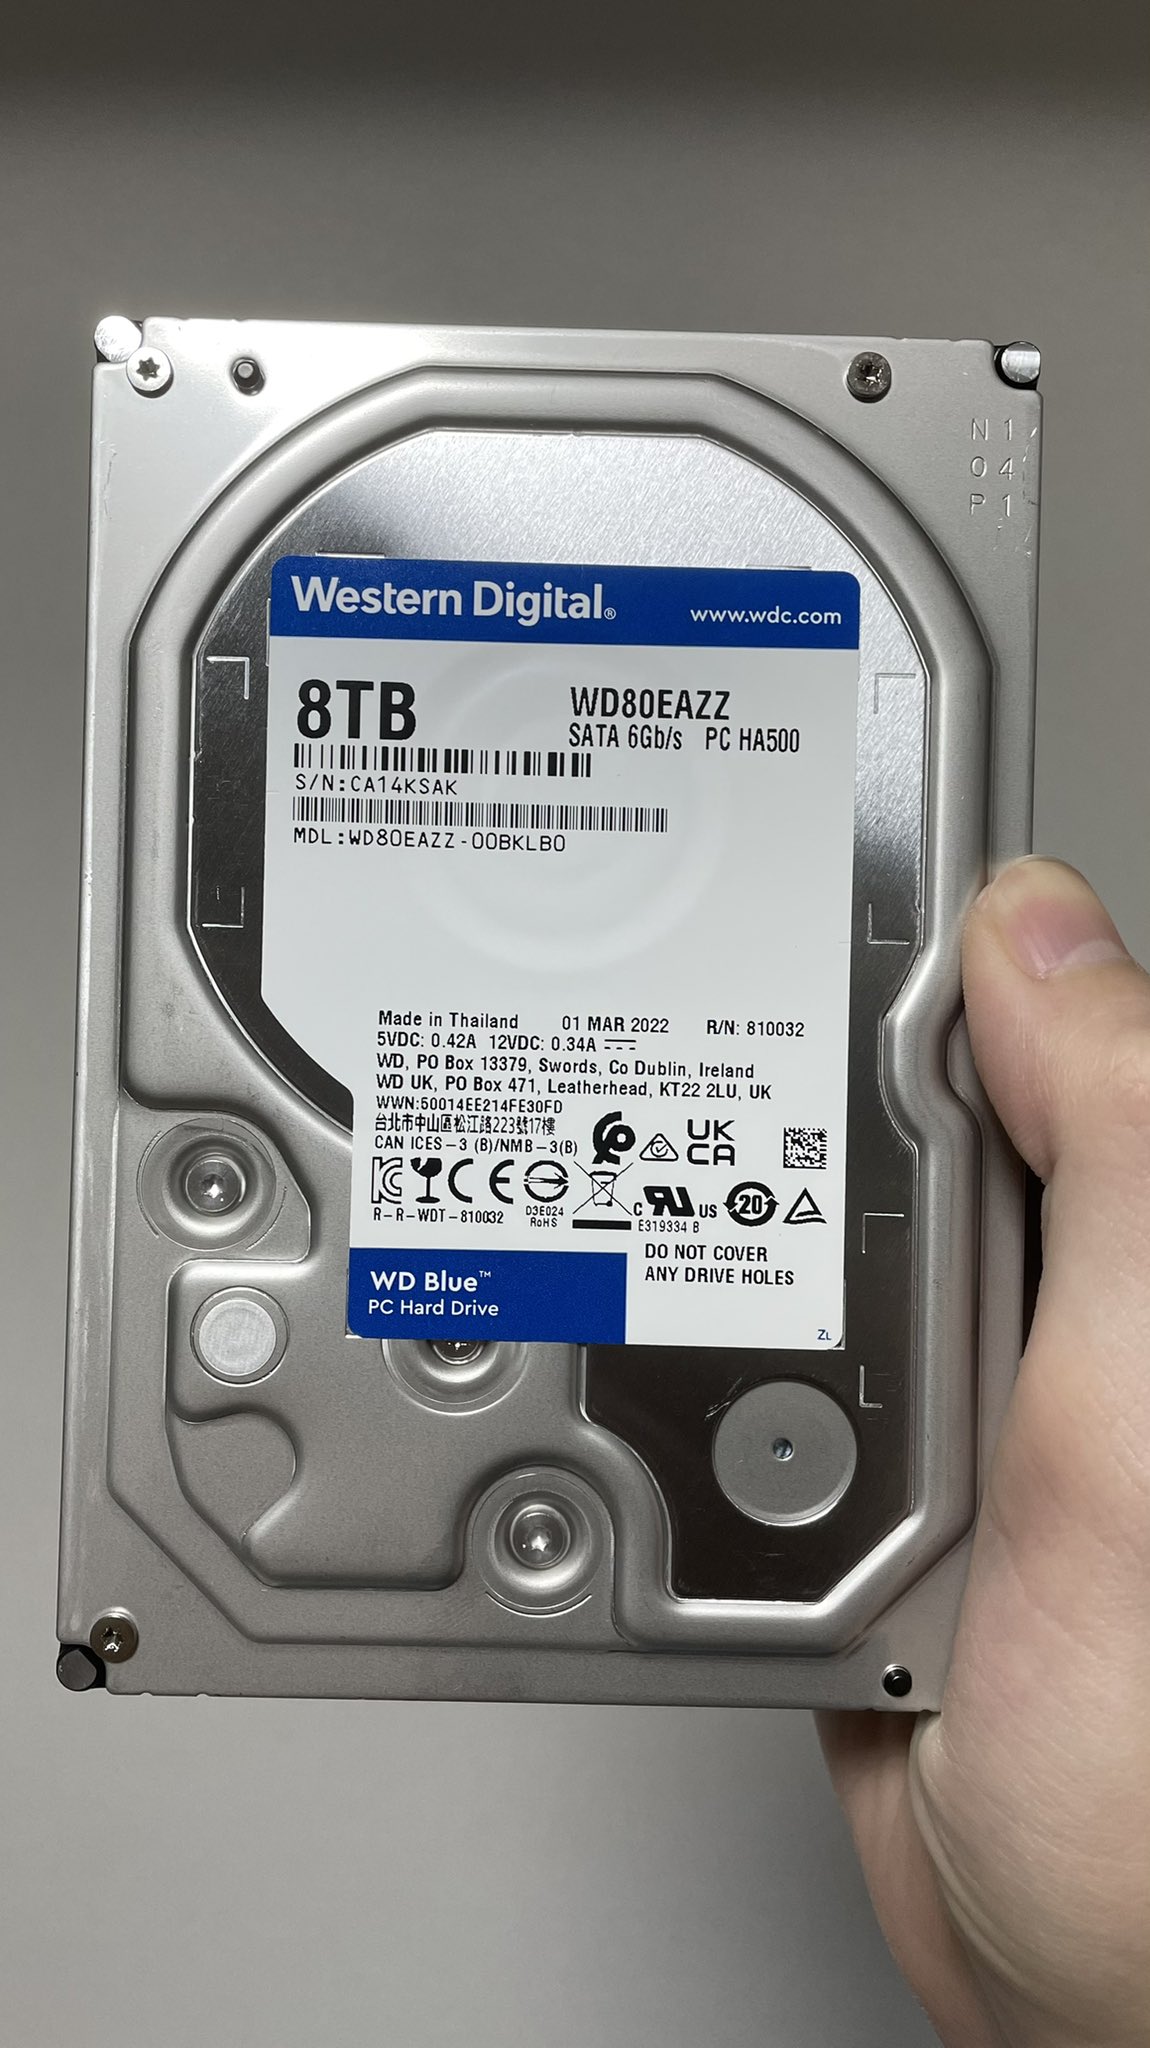 WDの8TB HDD、WD80EAZZを購入したのでIntelliParkを無効化する。 - なぎちゃんわんだーらんど